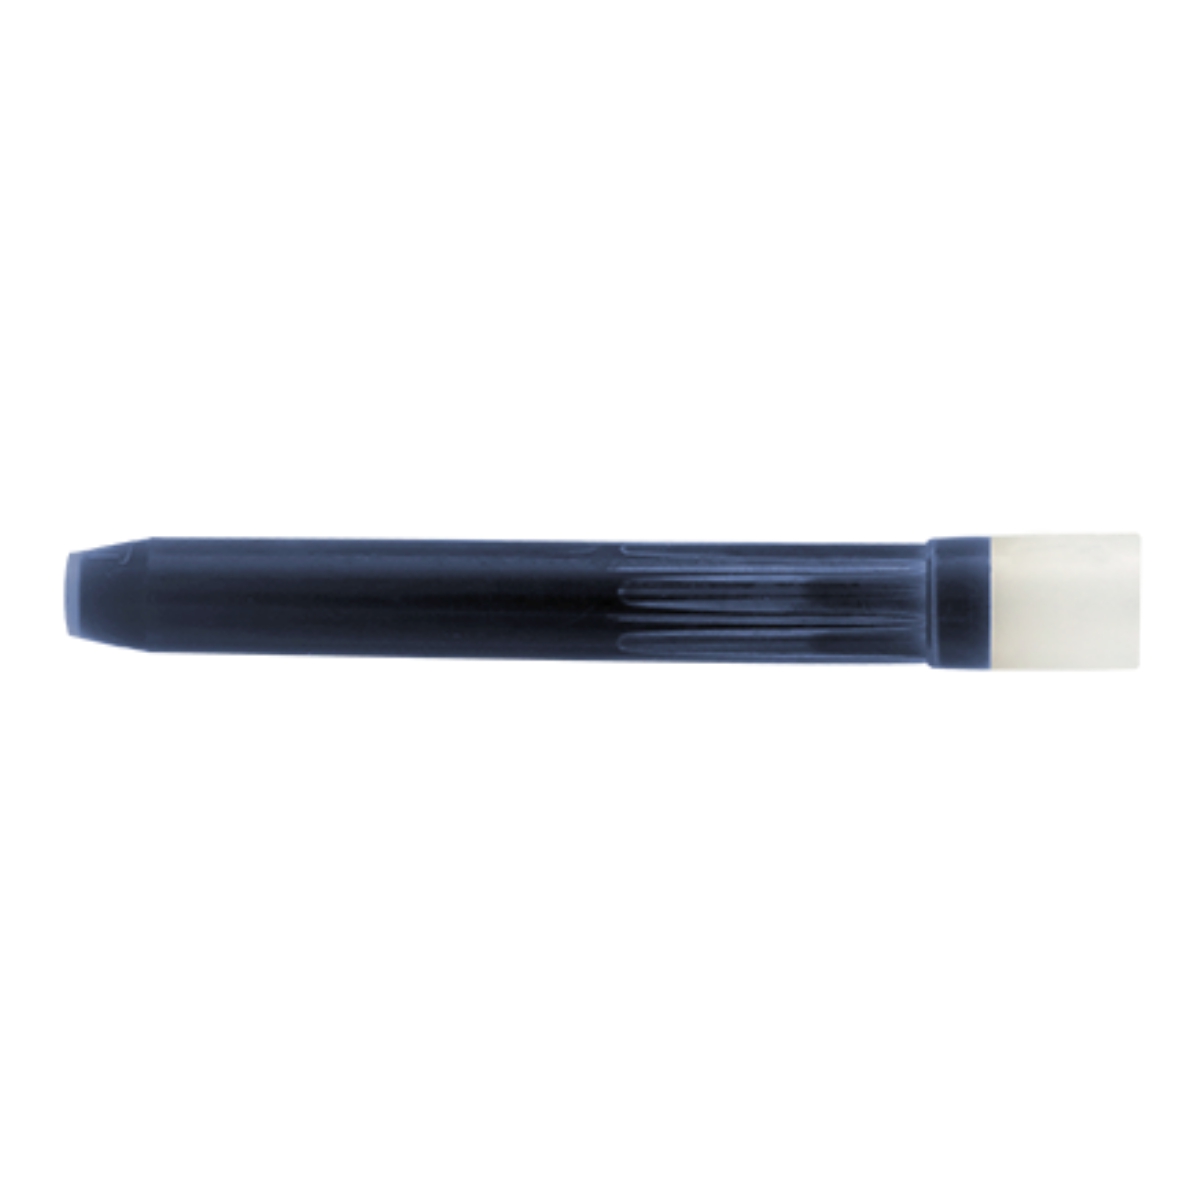 Tinta Refil para Caneta Tinteiro Pilot Parallel Pen e Kakuno Azul Com 6 Cartuchos